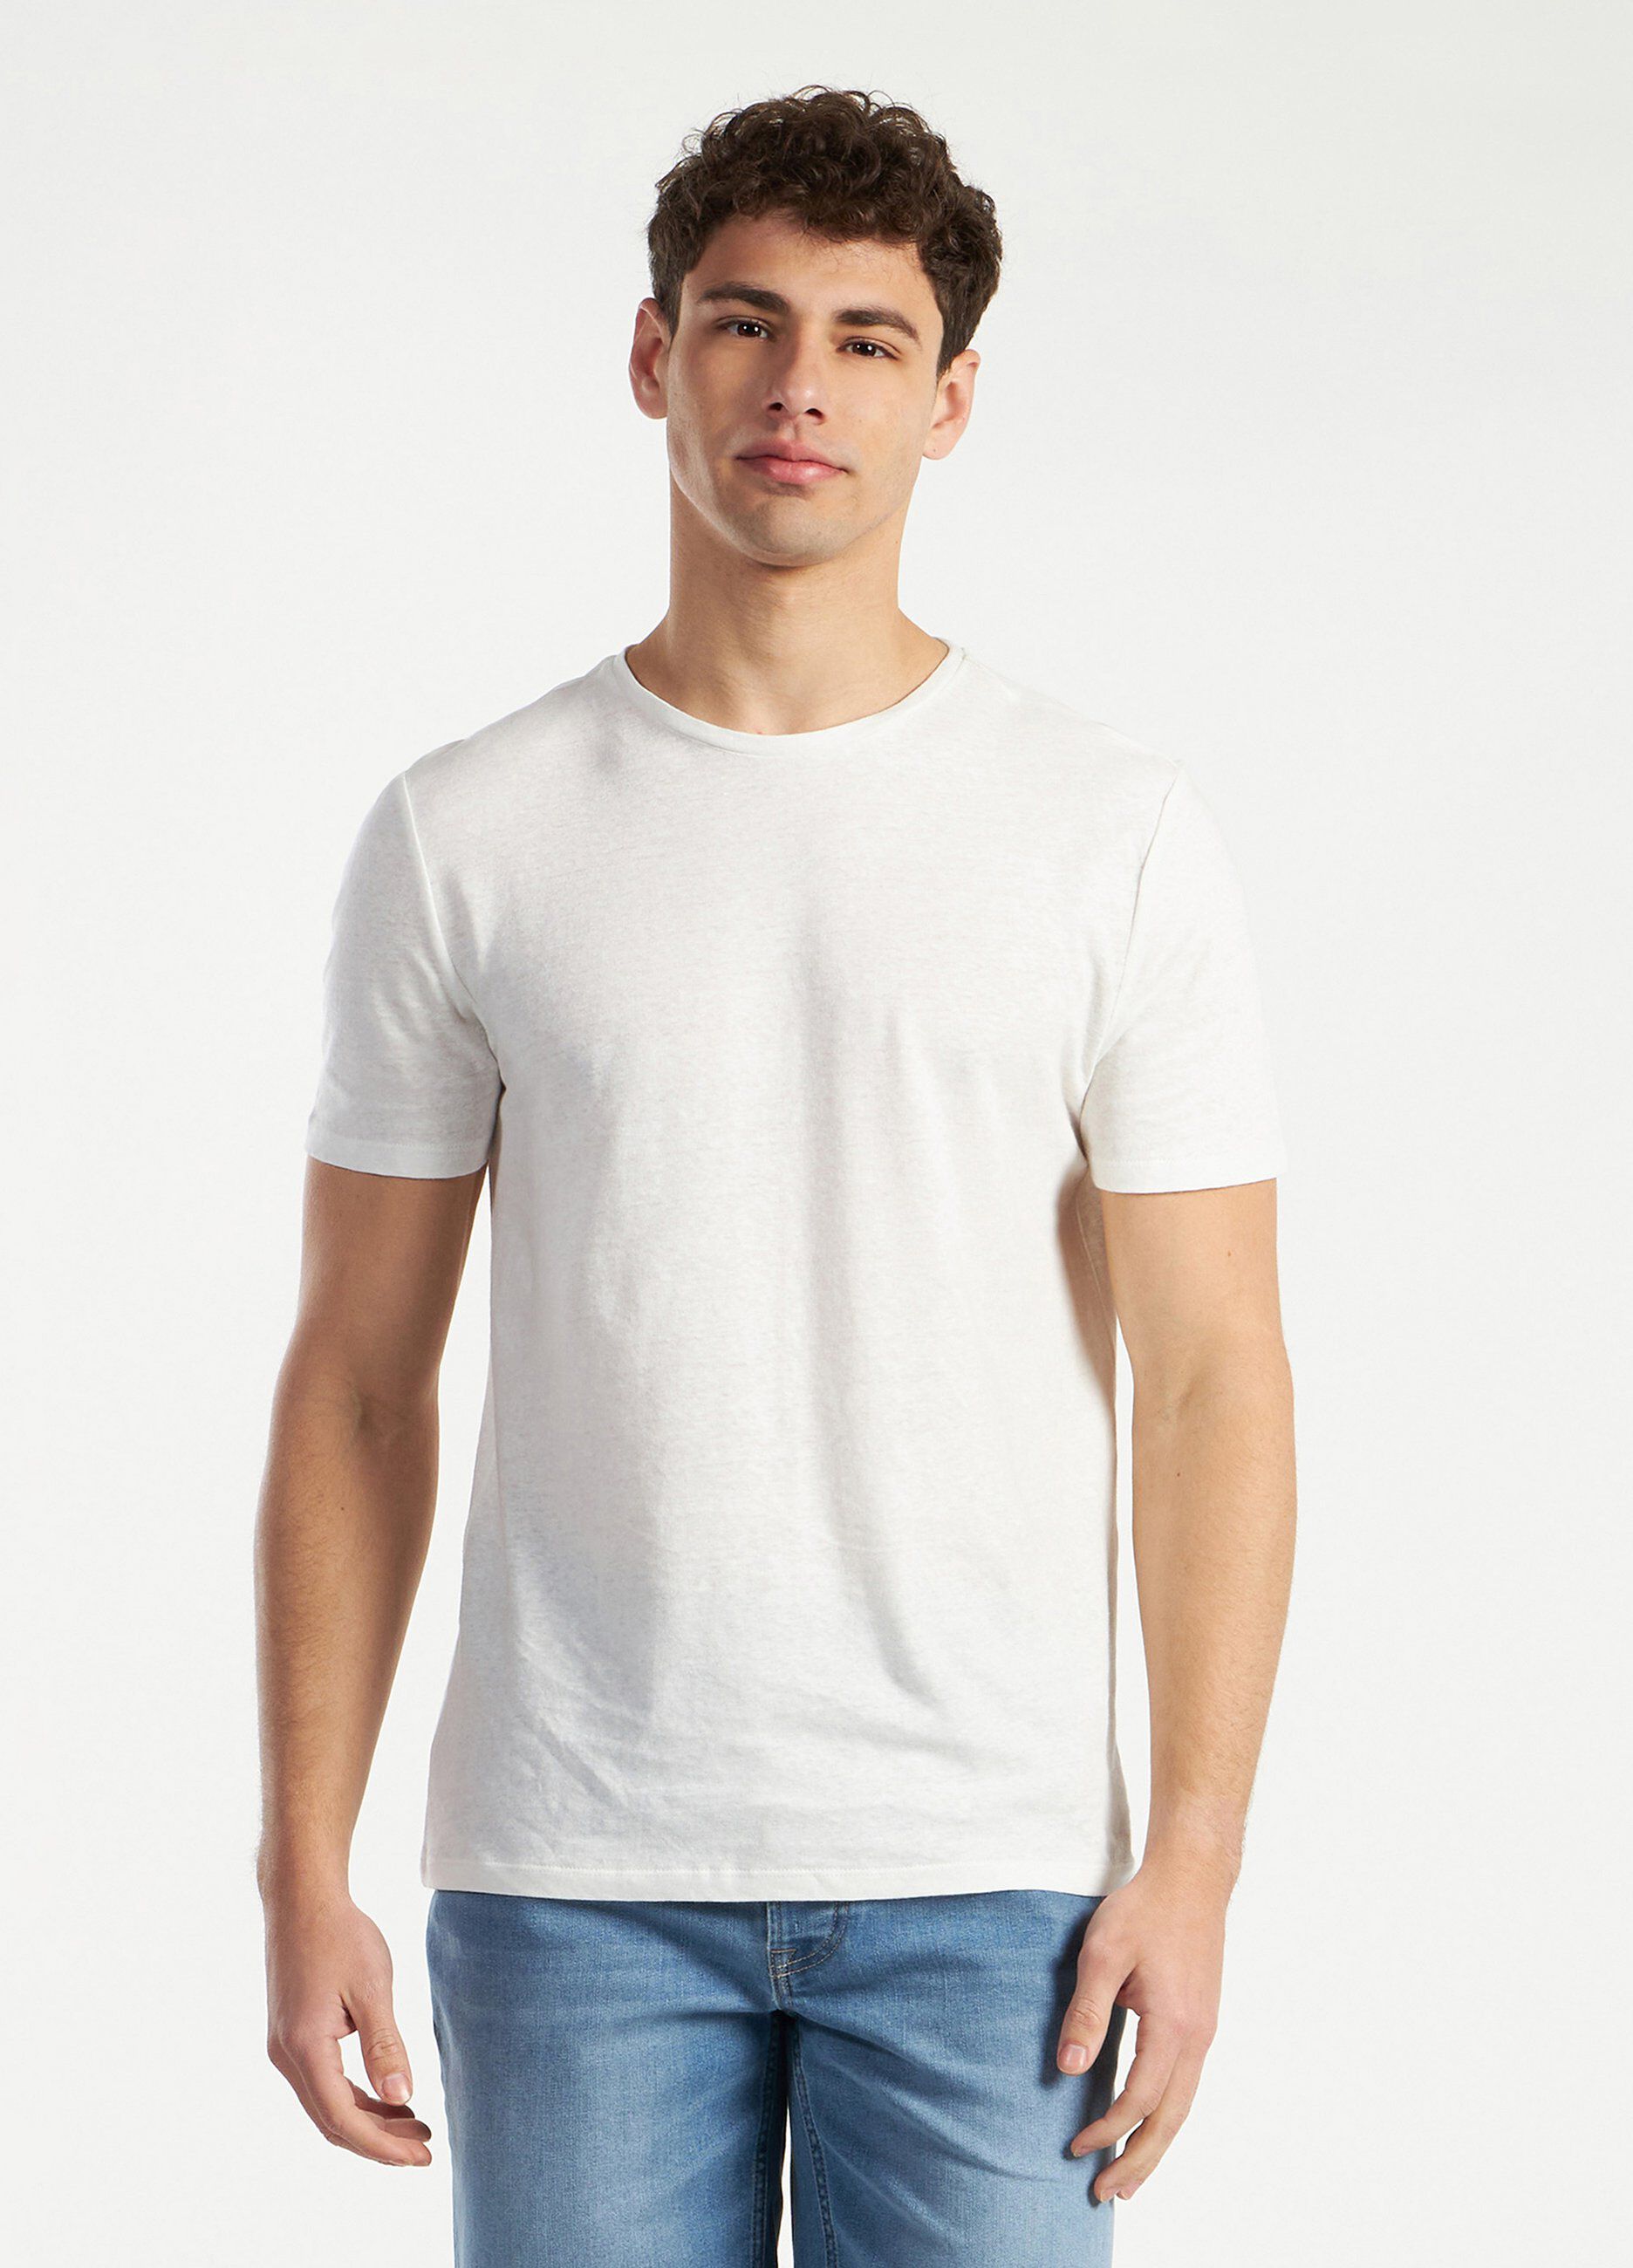 T-shirt in lino misto cotone uomo